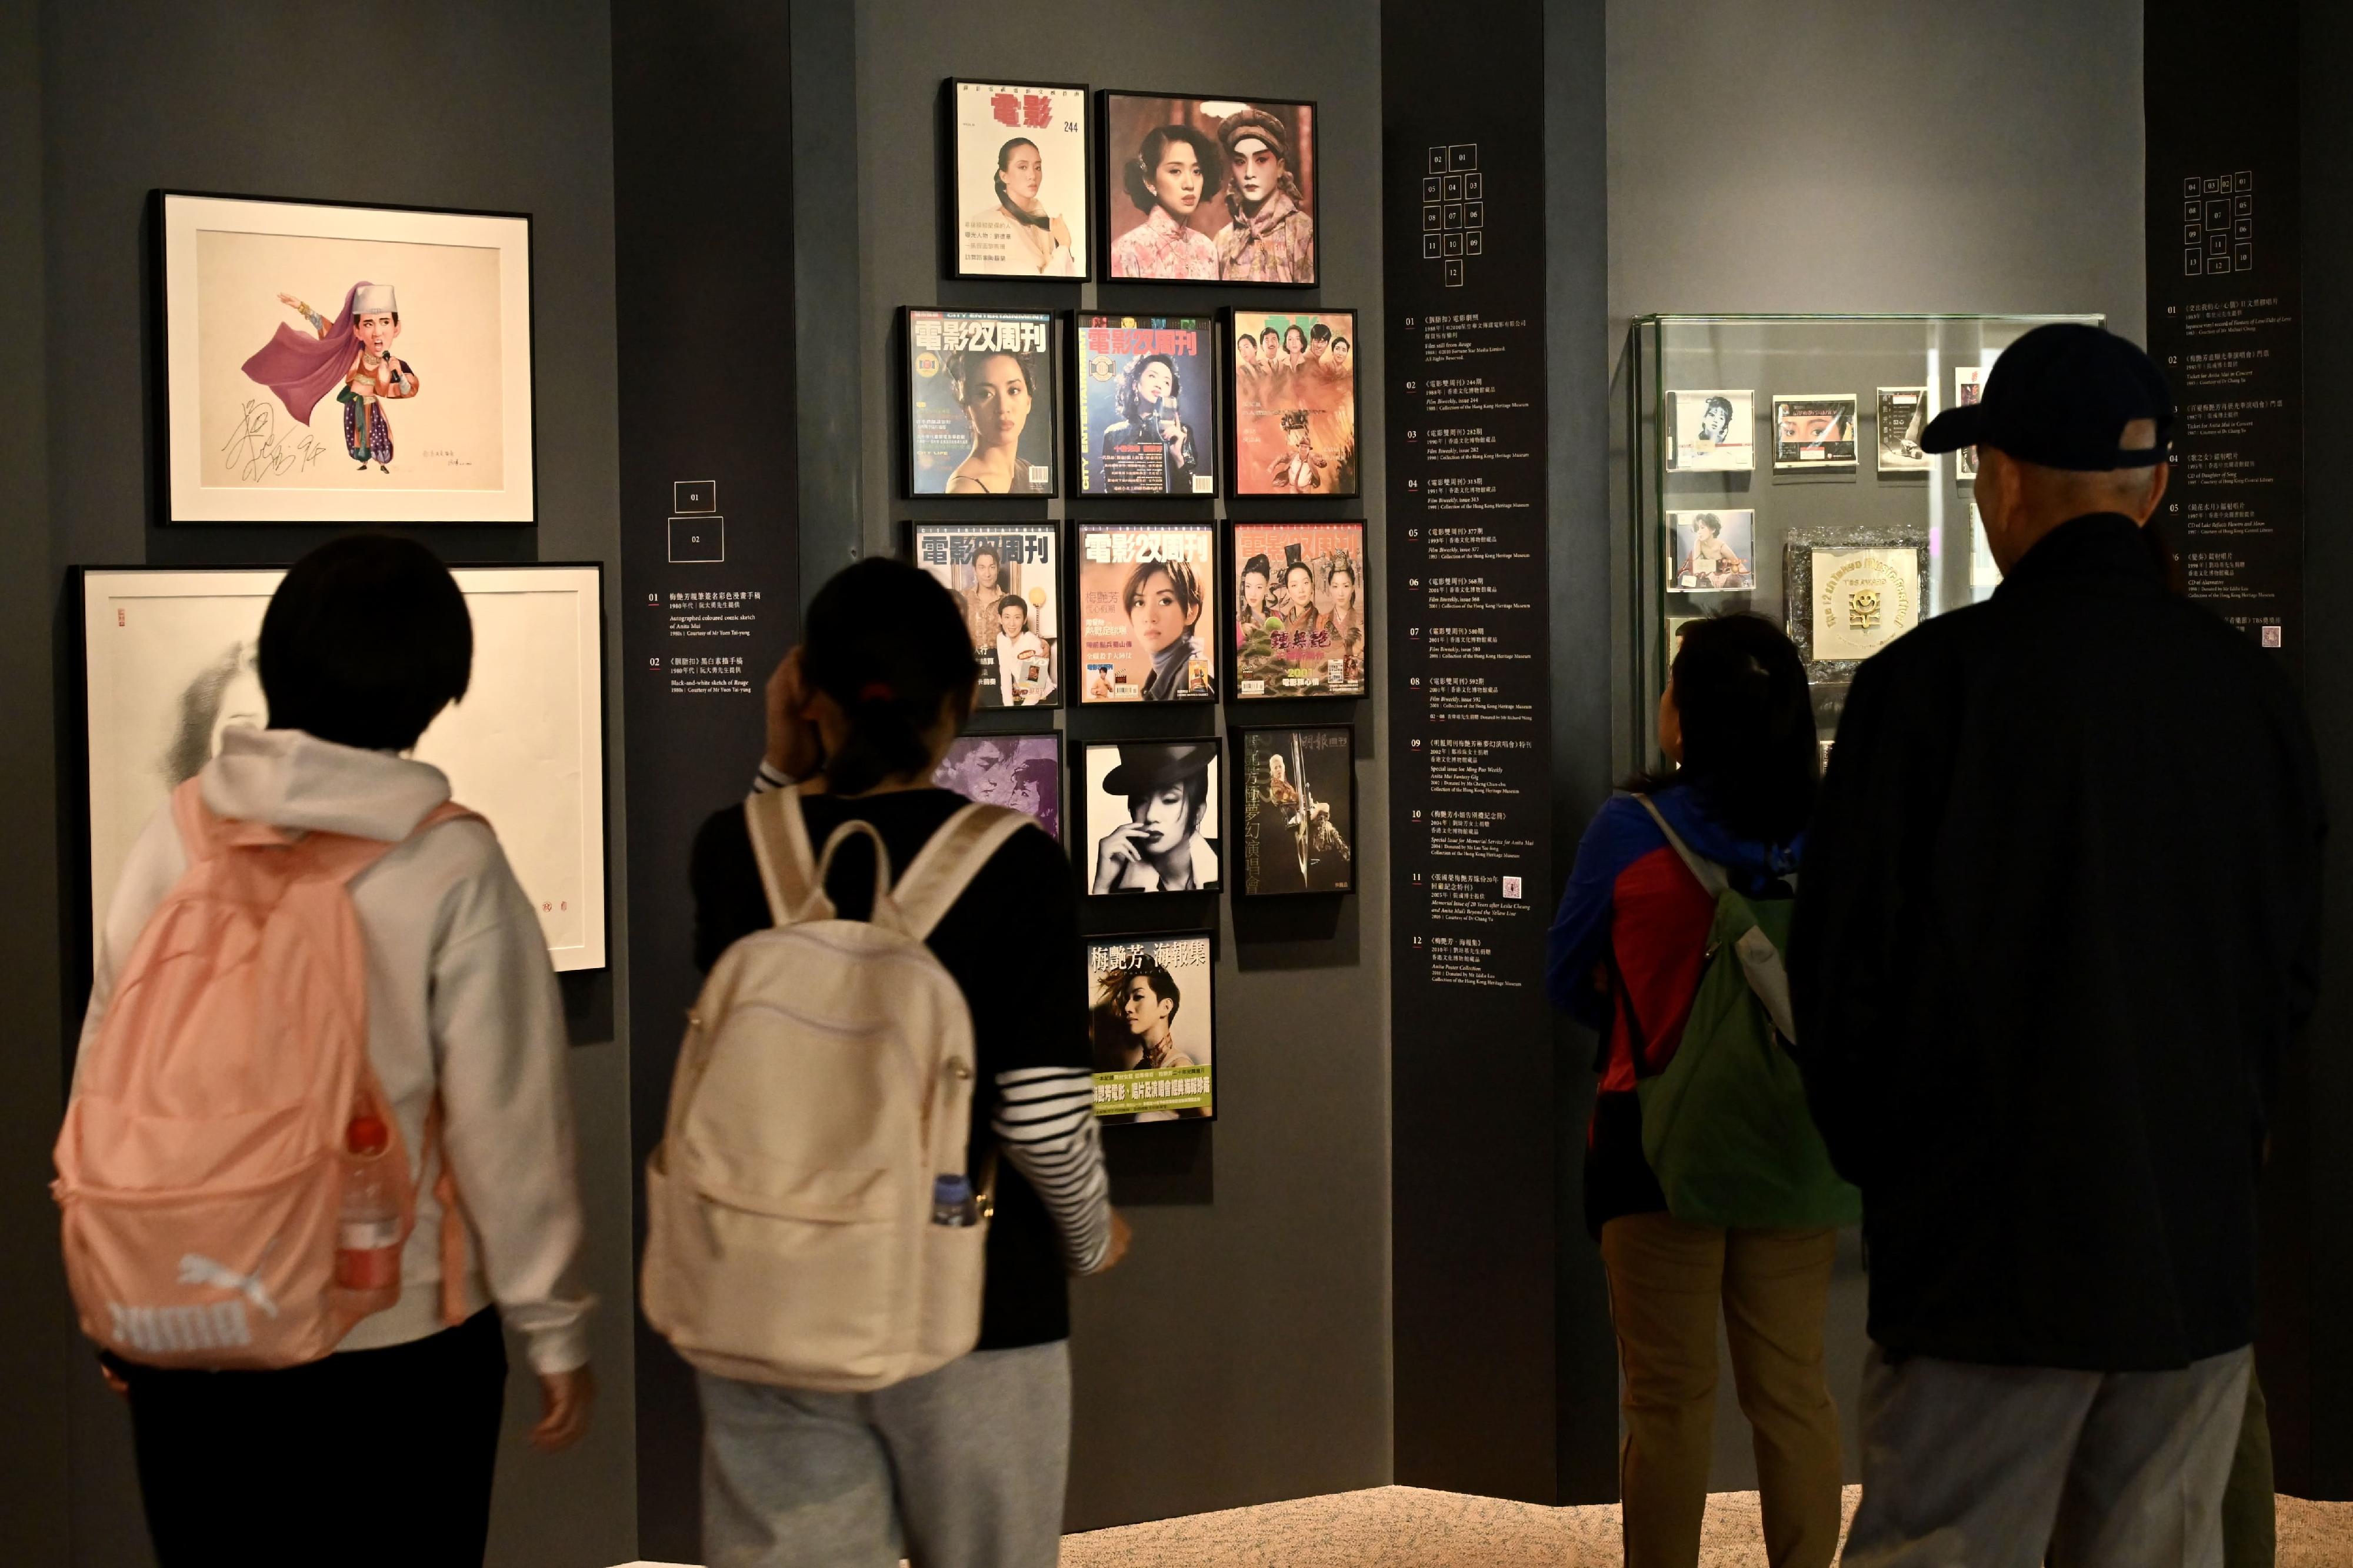 康乐及文化事务署辖下的香港文化博物馆现正举行的「绝代芳华・梅艳芳」展览亦获得市民支持，自去年十二月二十四日开展至昨日（三月六日），已有10万人次前来参观。图示市民参观展览。